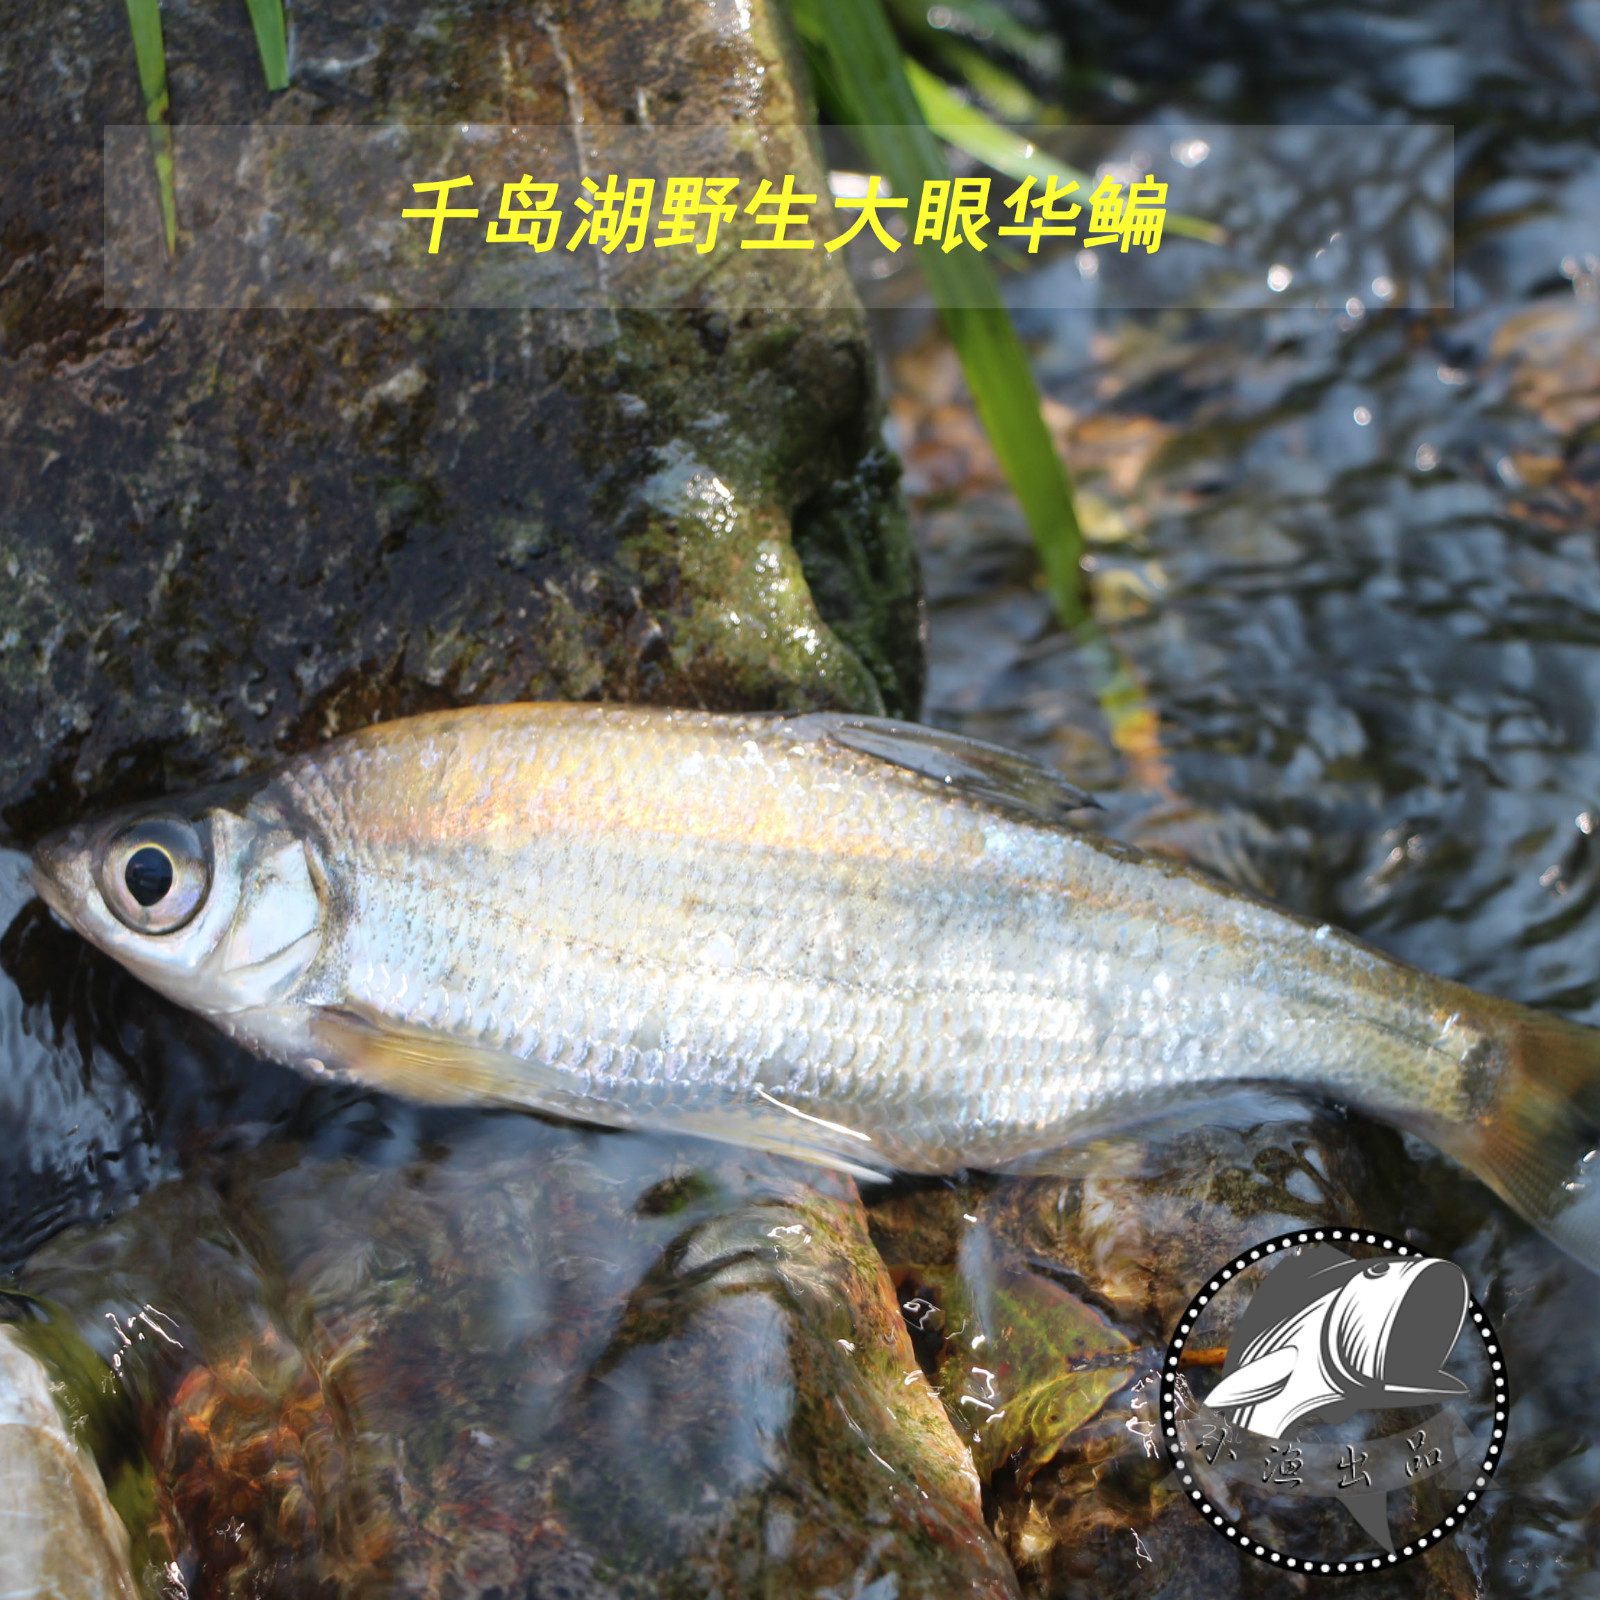 千岛湖野生鱼淡水野杂鱼鳊鱼  鲜活水产黄花皮野生弯弯片大眼华鳊